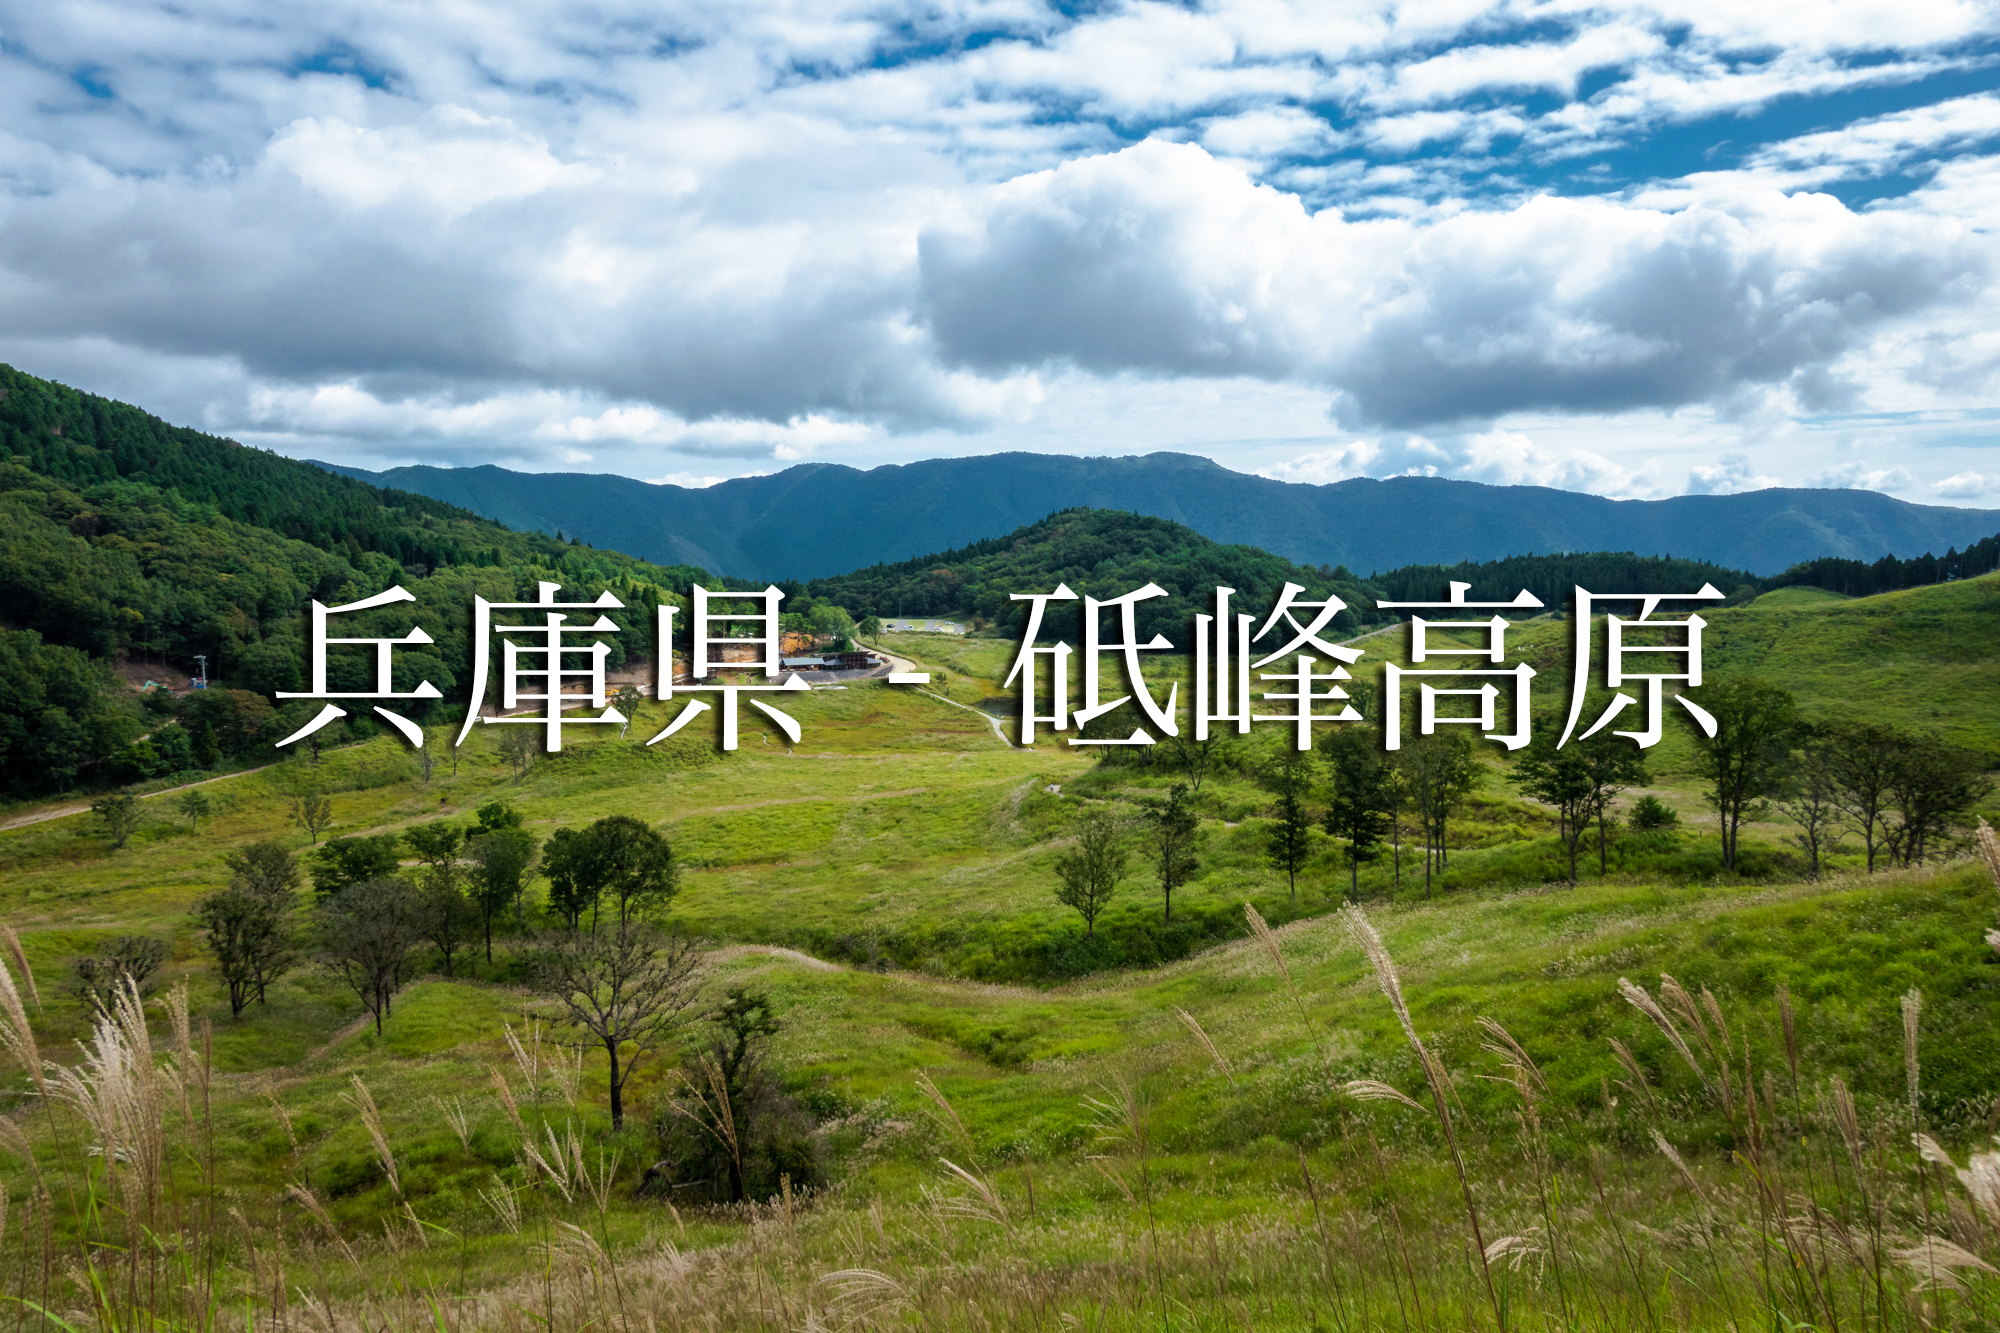 兵庫県 砥峰高原 一面ススキの草原が広がる絶景の高原写真スポット 撮影した写真の紹介 アクセス情報や撮影ポイントなど 写真や映像で紹介する関西 近畿の絶景カメラ 観光スポット